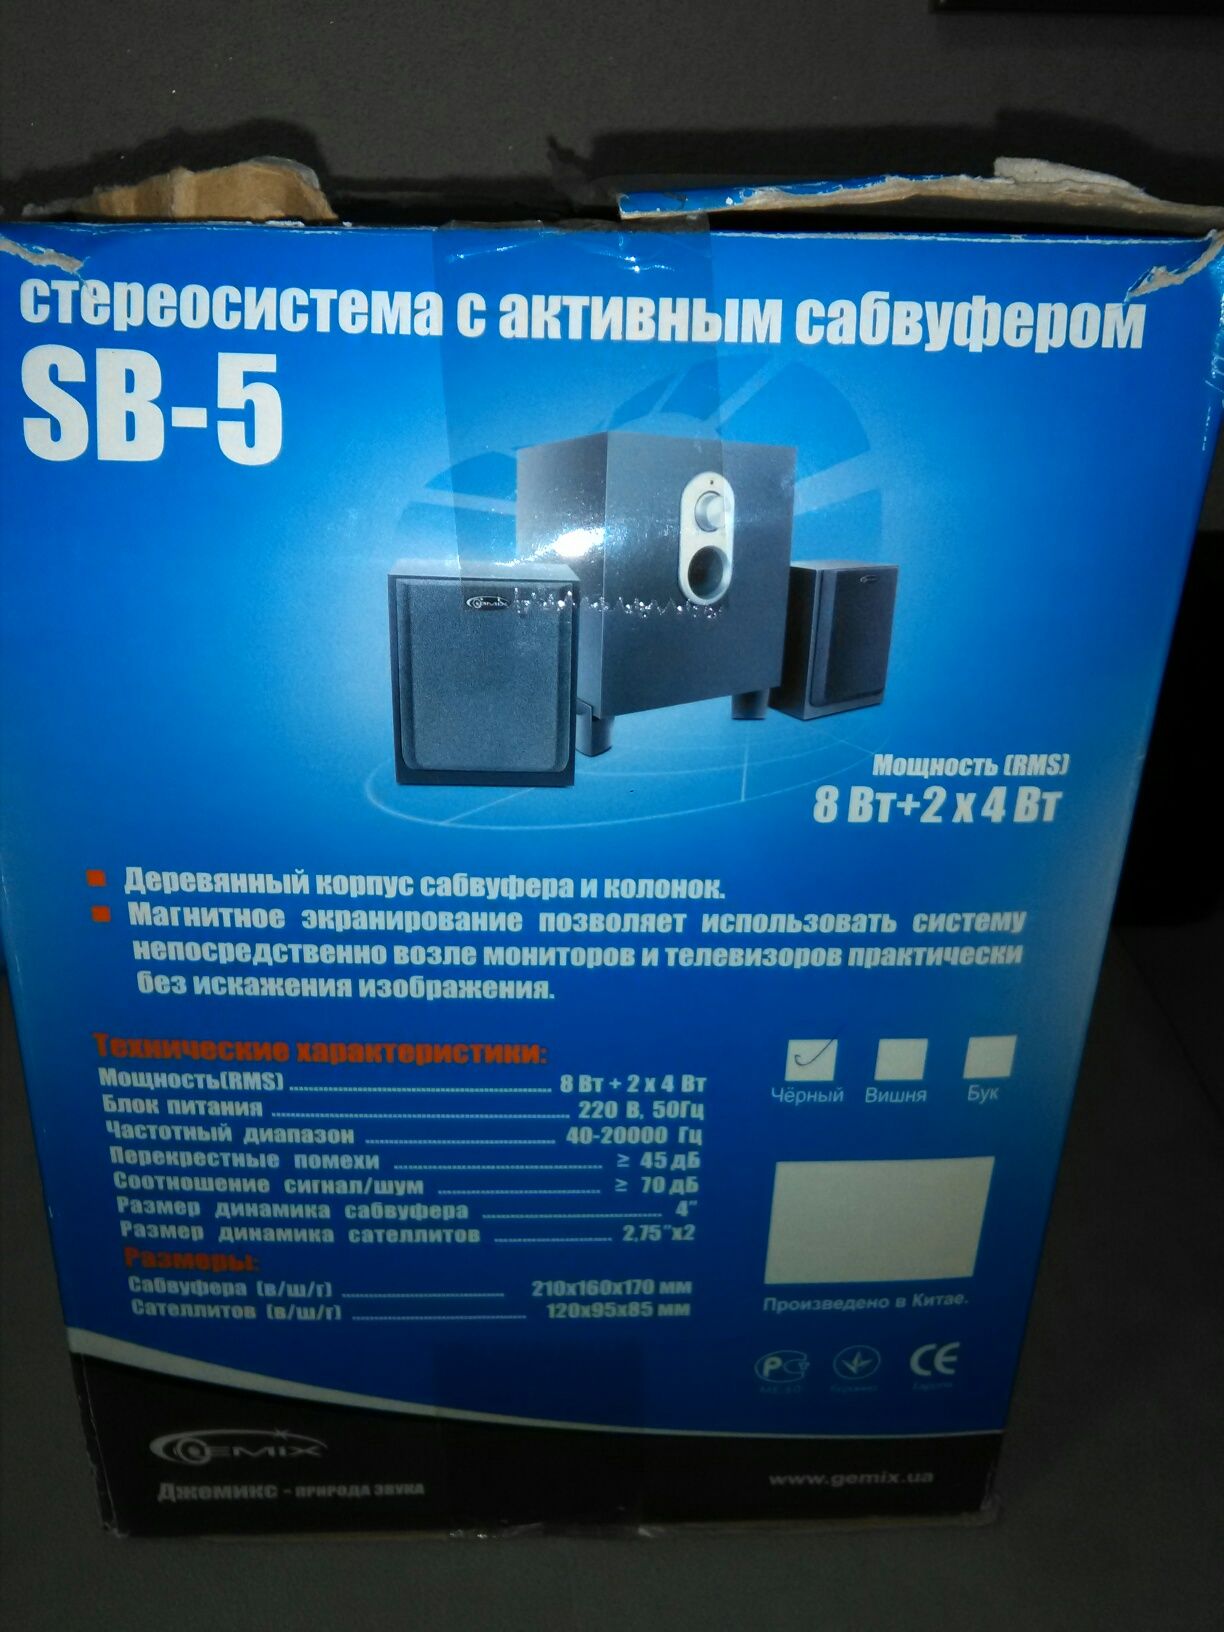 SB-5 акустическая система 2.1 Gemix с активным сабвуфером цена 900гр..